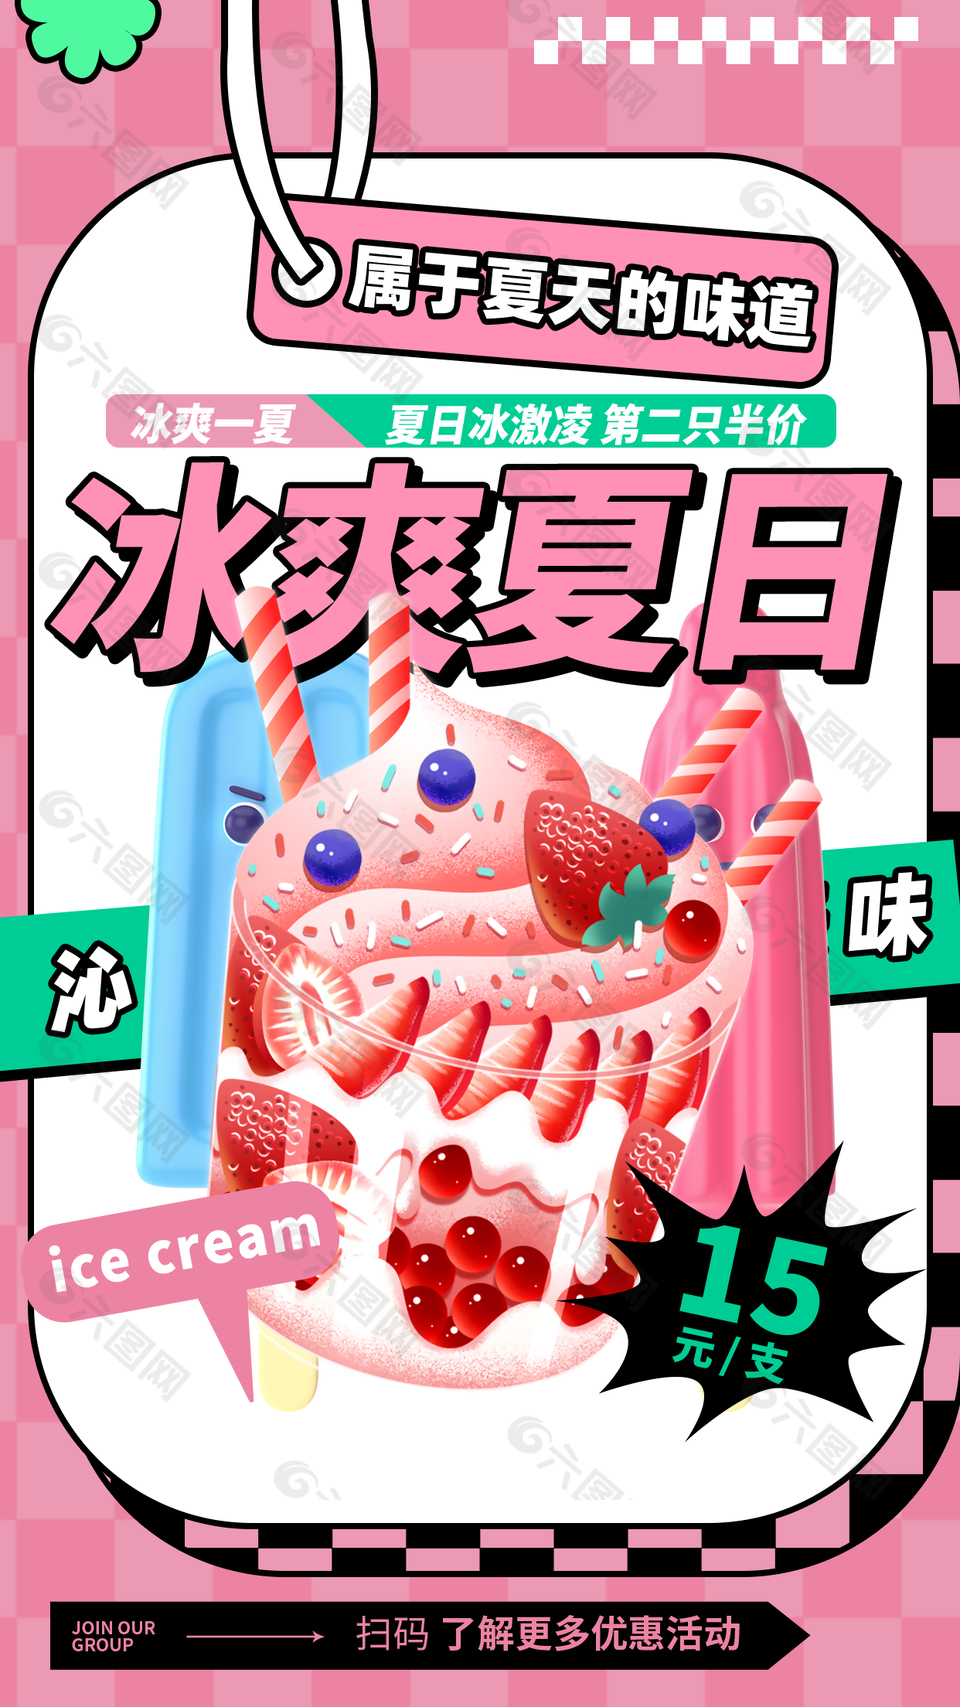 冰爽夏日冰淇淋第二支半价促销海报